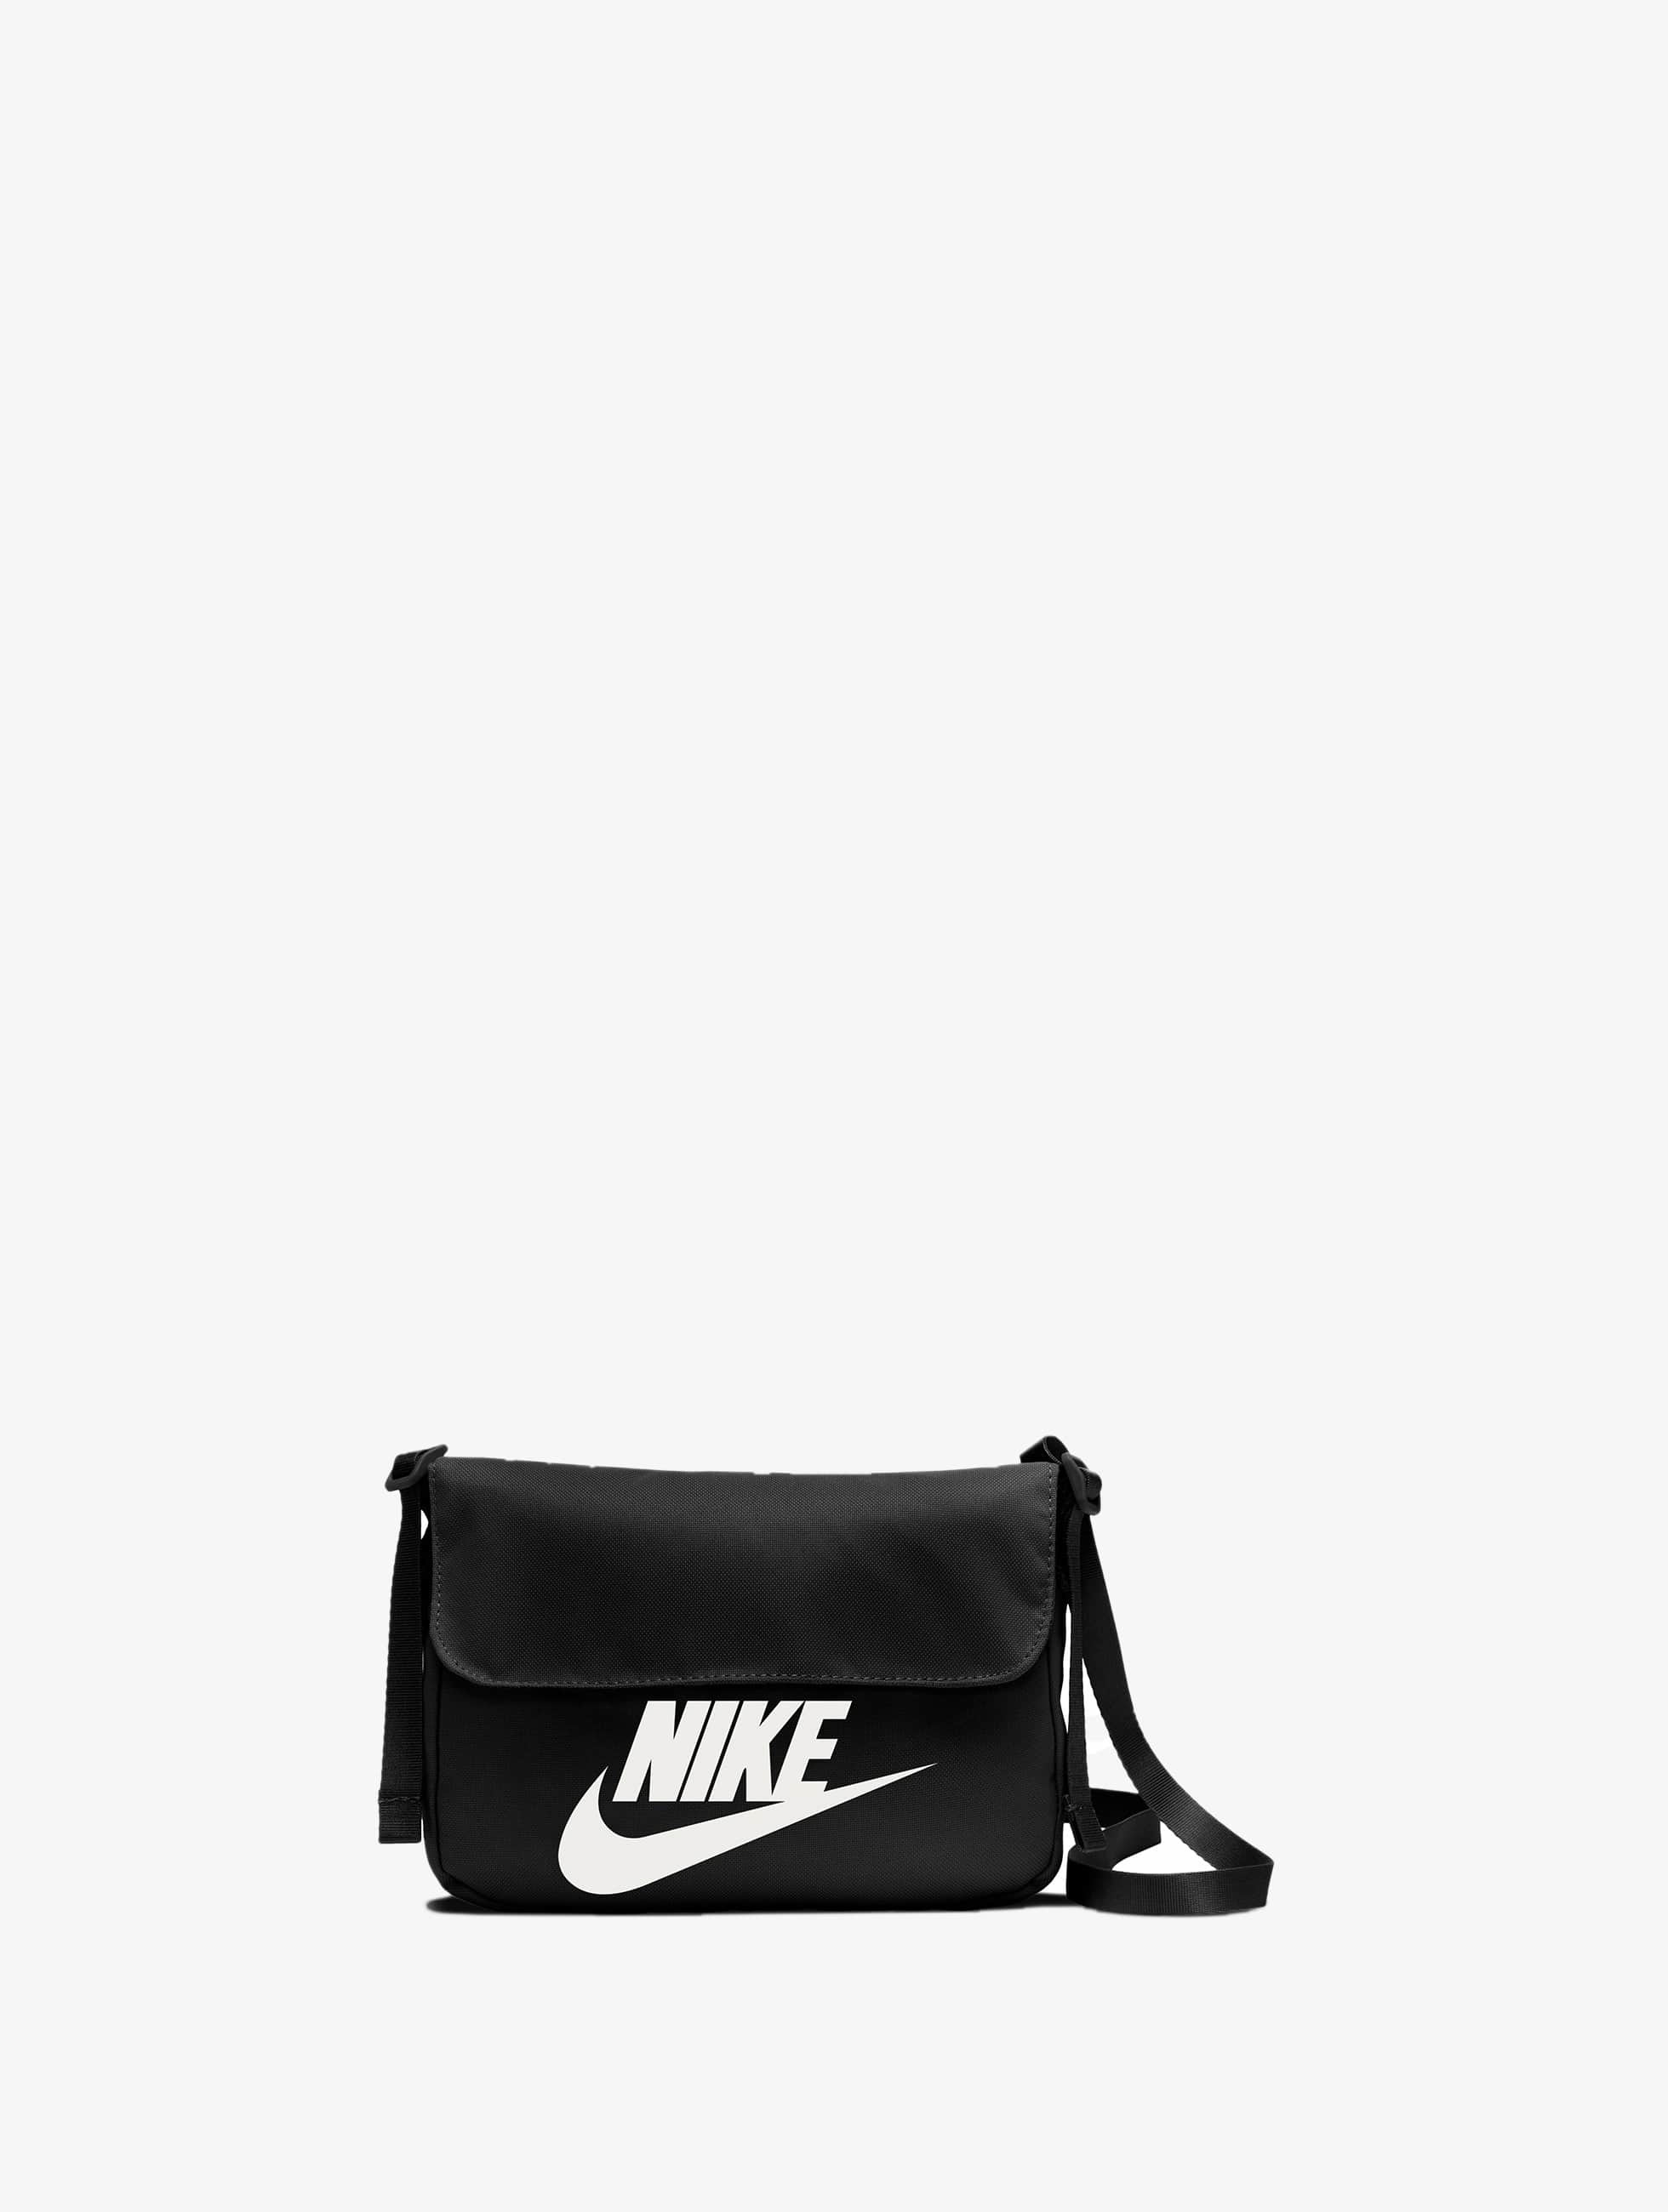 Wereldvenster beklimmen Merchandising Nike Accessoires / tas Futura 365 in zwart 838072